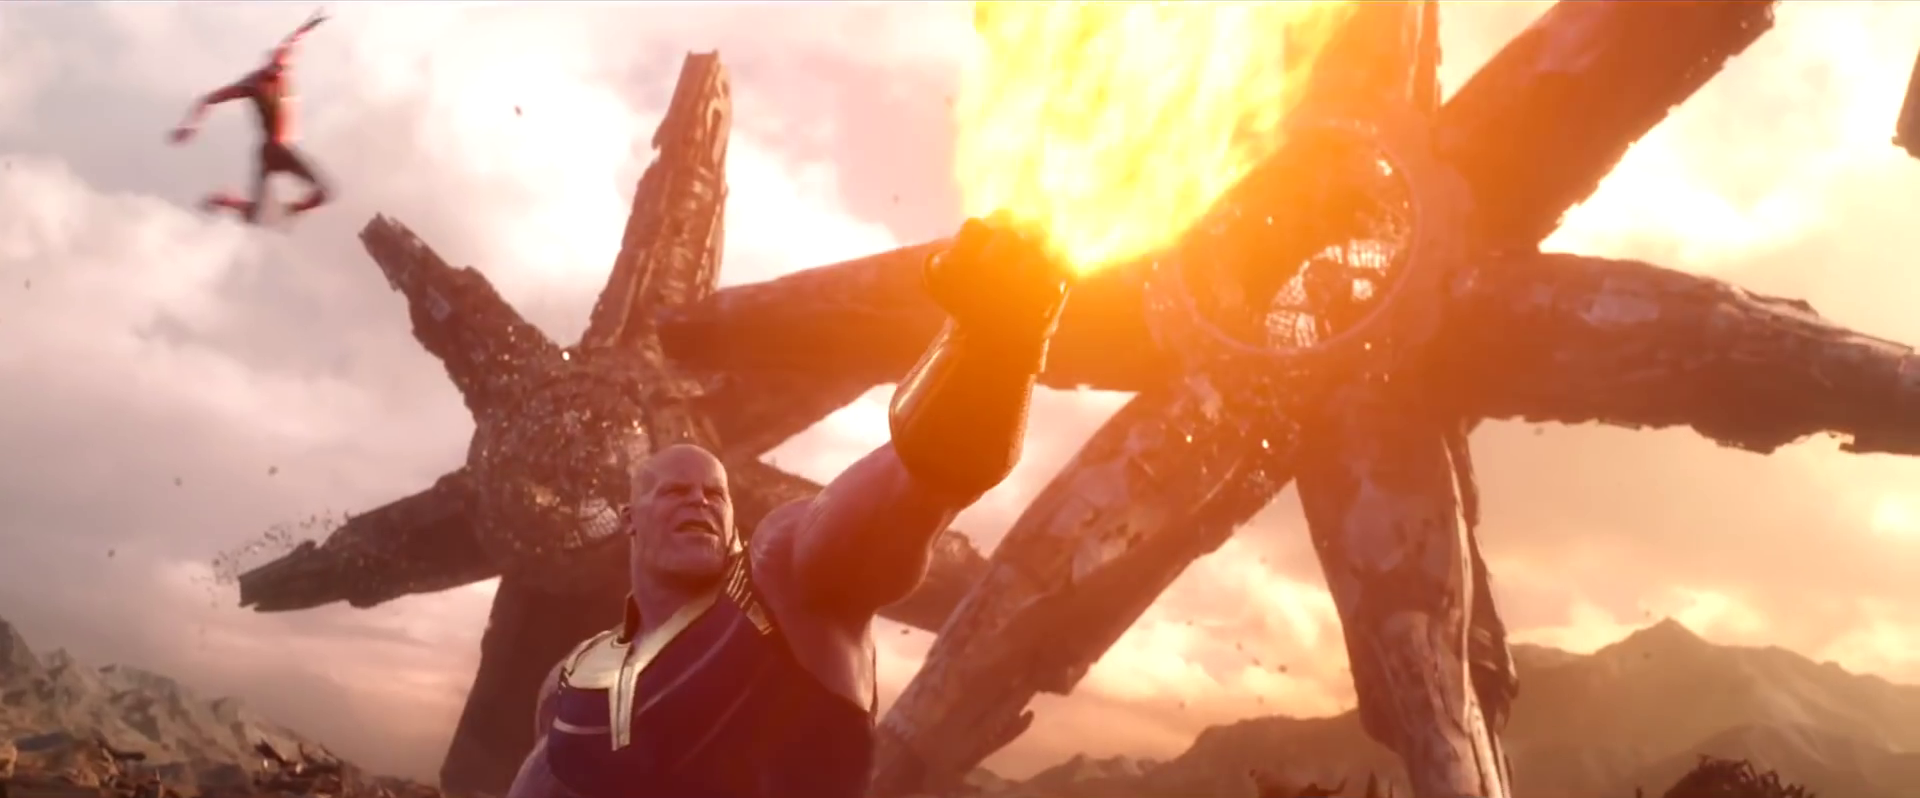 Cảnh Avengers đánh nhau với Thanos trên hành tinh Titan rò rỉ